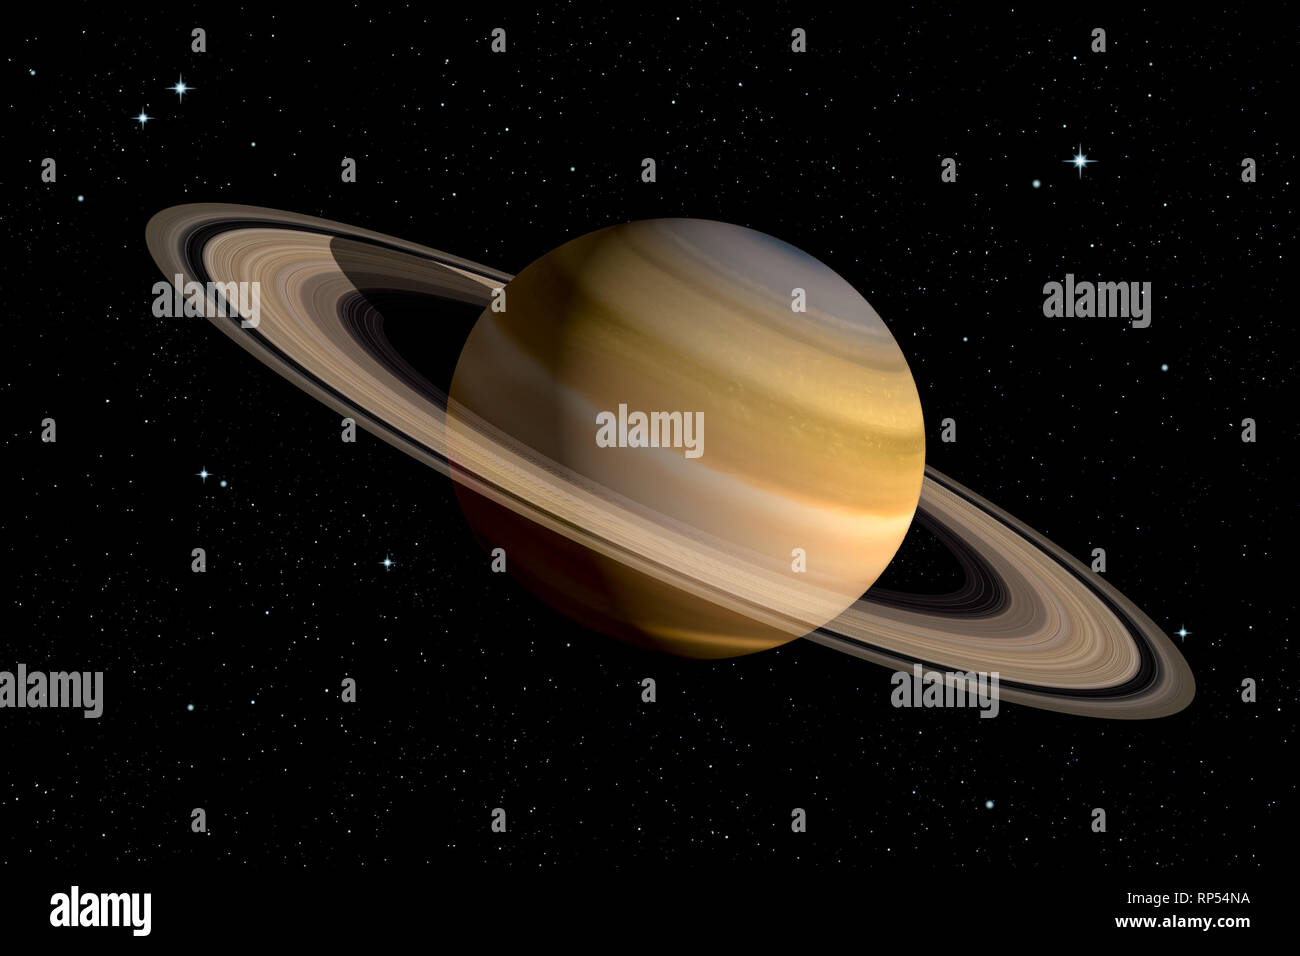 Realistiche in 3D rendering del pianeta Saturno con i suoi anelli. Illustrazione dello spazio. Alcuni elementi arredate dalla NASA. Foto Stock